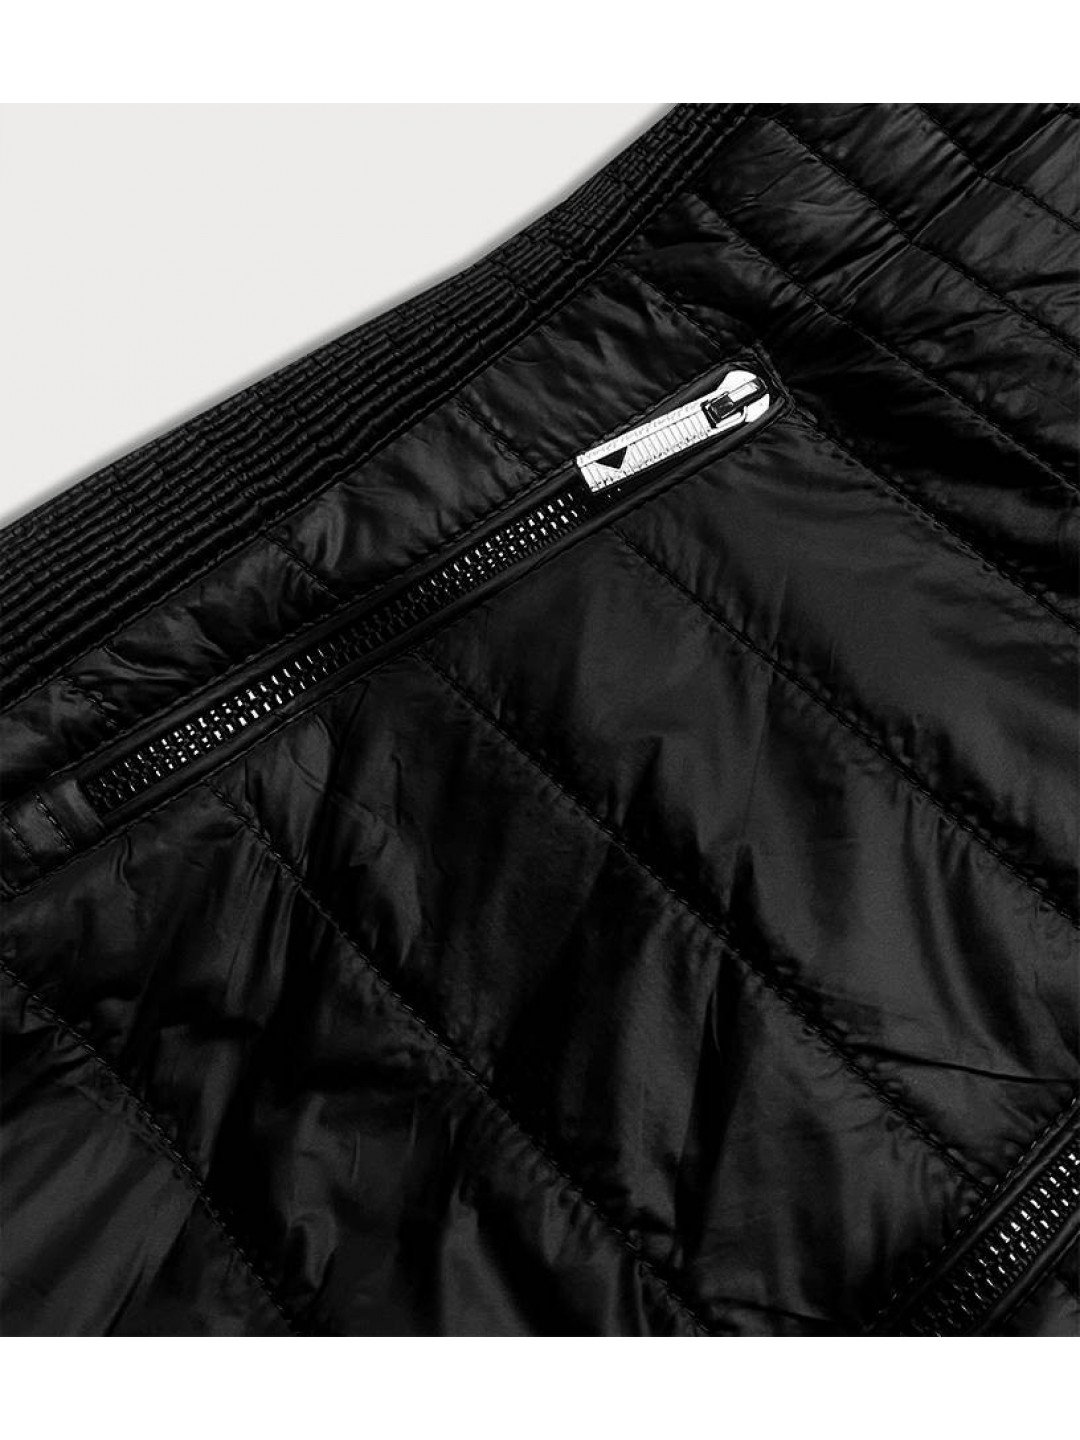 Černá prošívaná dámská bunda s vsadkami černá XXL 44 model 17047650 – ATURE